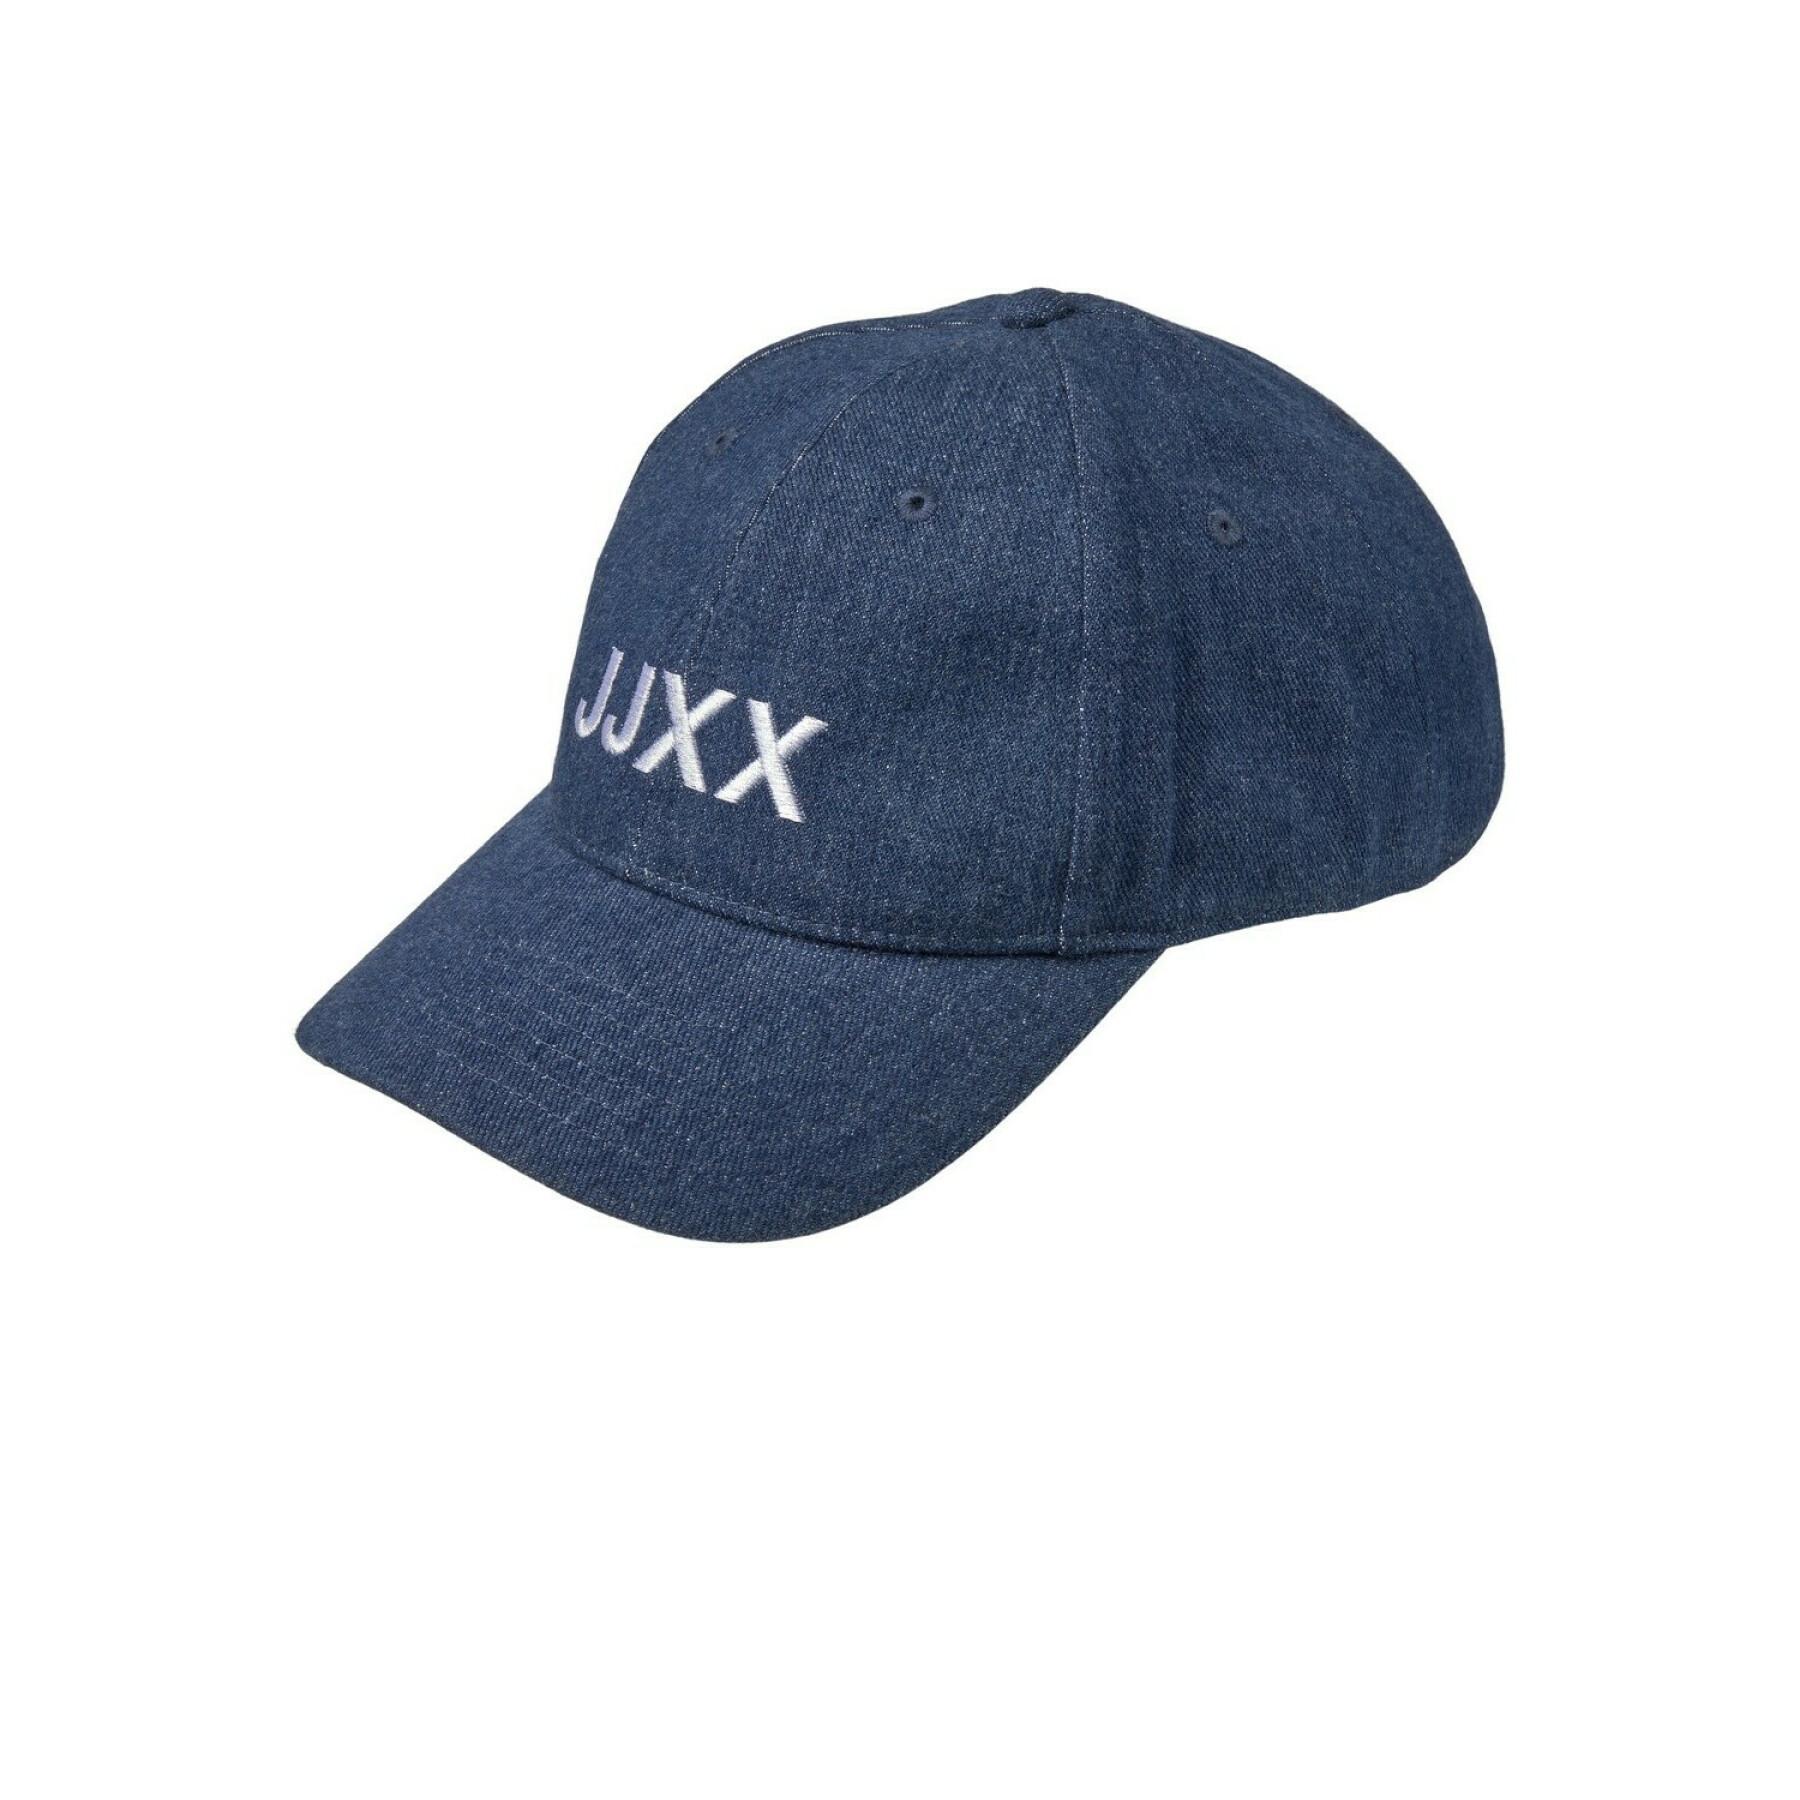 Boné feminino JJXX basic big logo denim